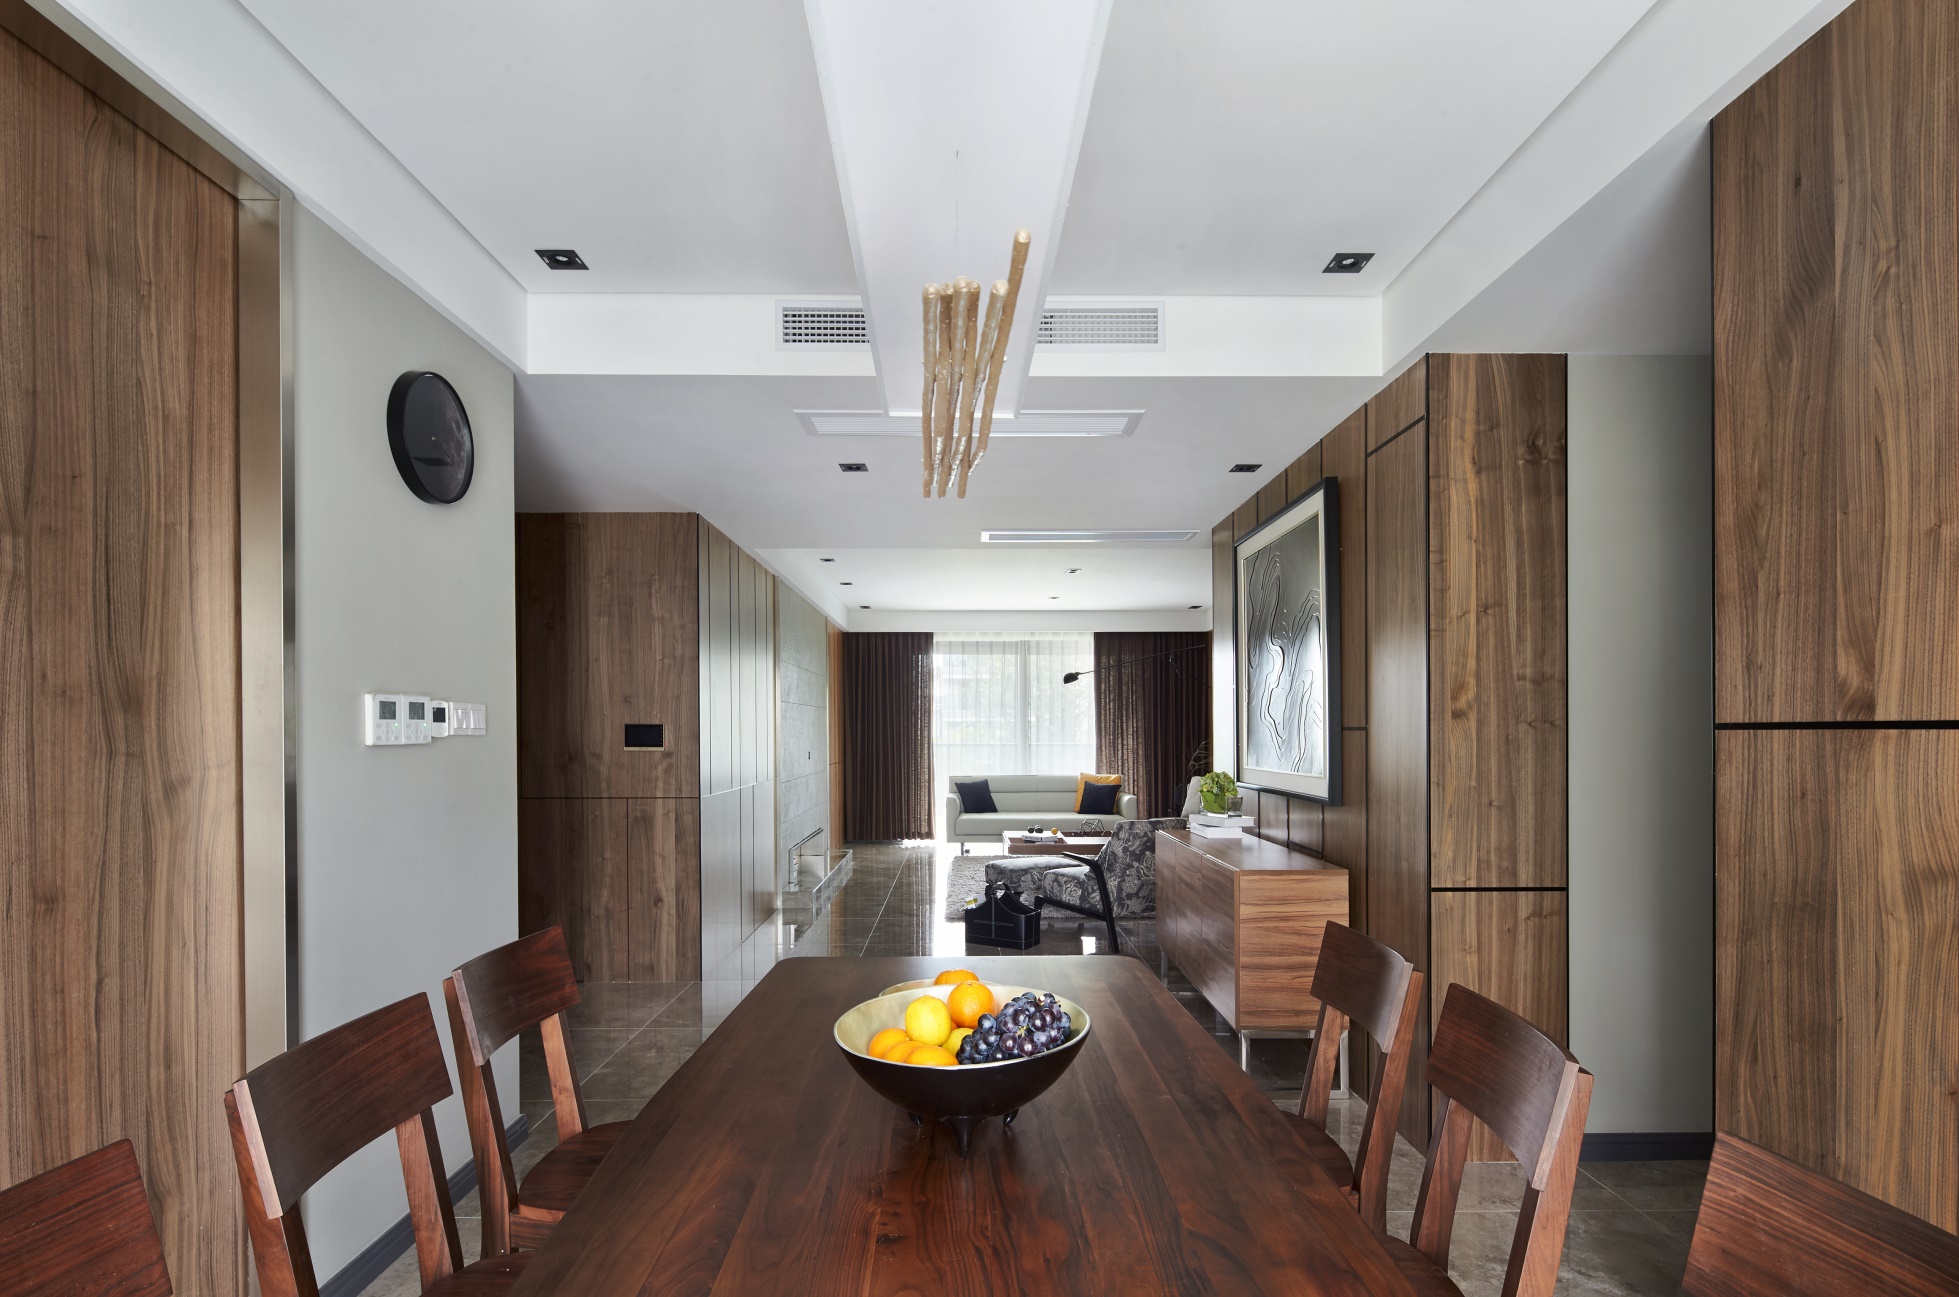 餐厅与客厅相连，沿用木质基调，餐桌椅、背景墙木色邻近，呈现出自然雅致的用餐环境。